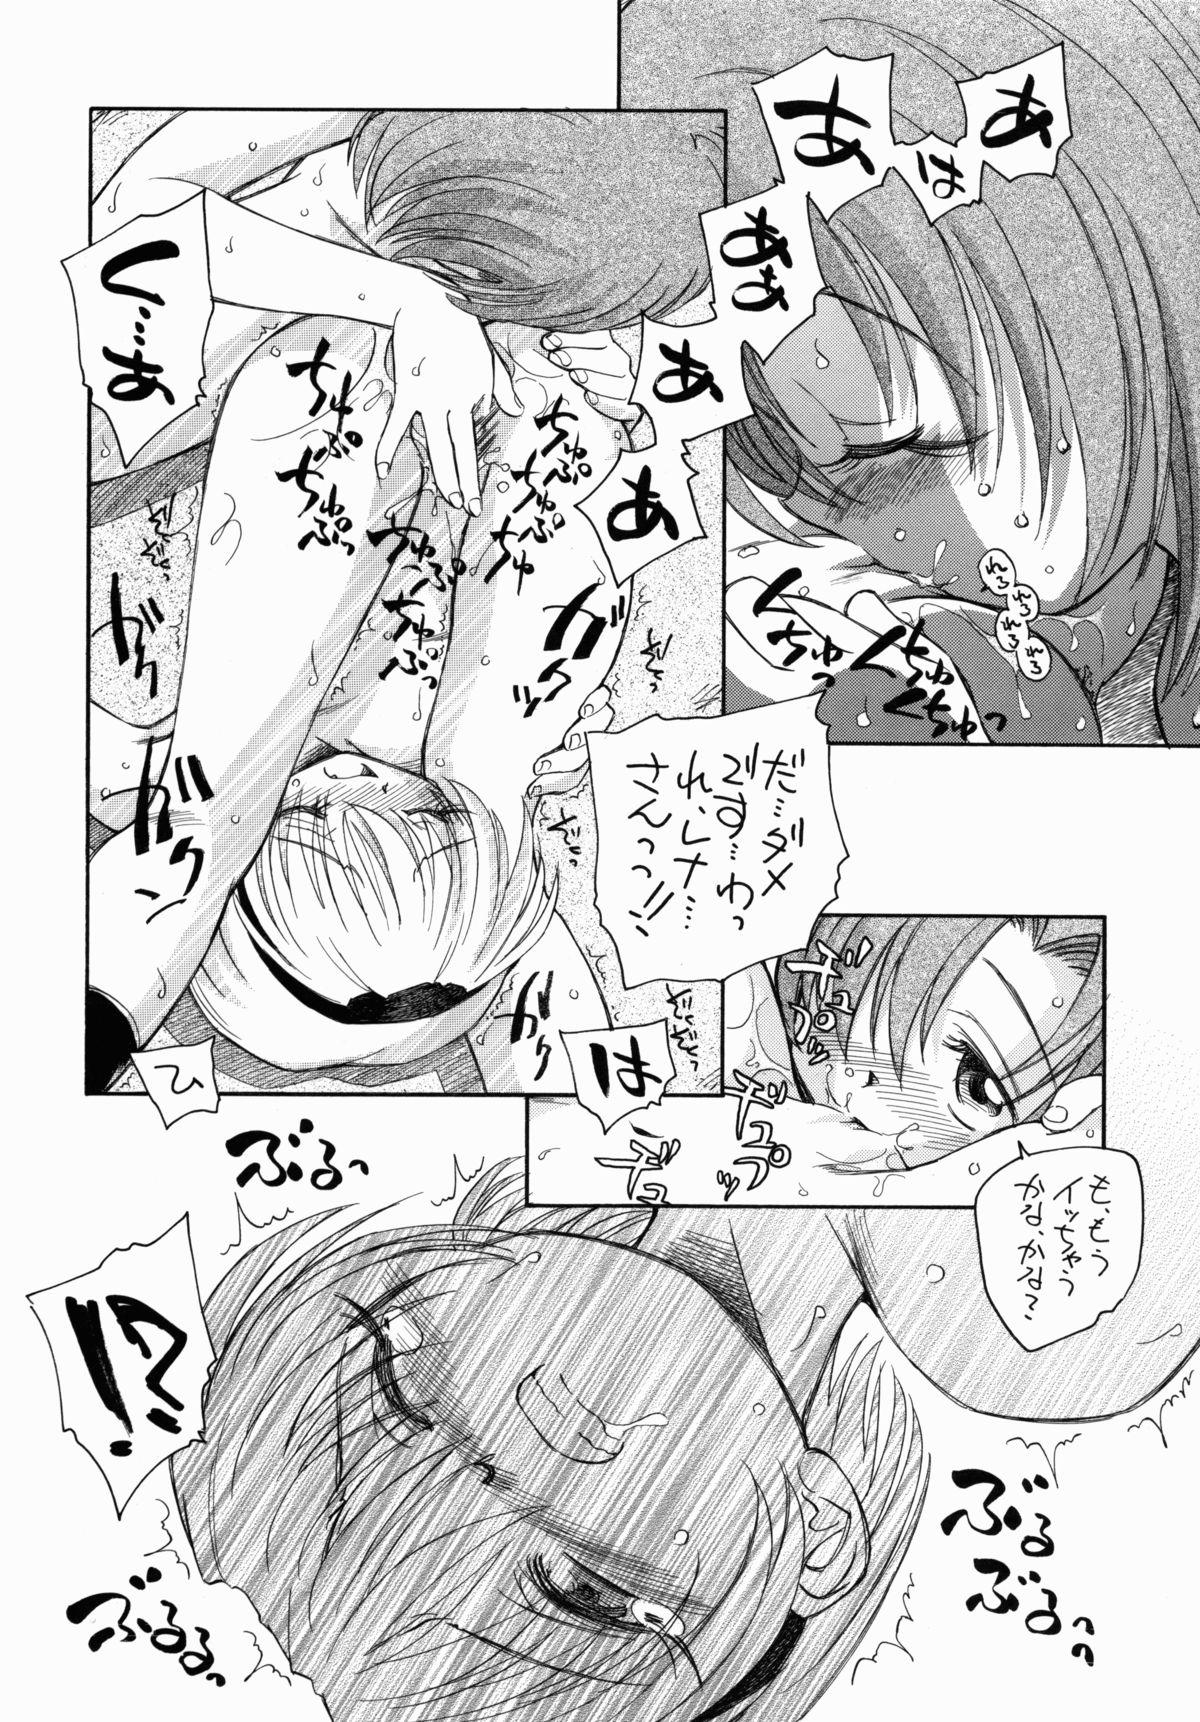 Pain Higurashi Dakara Hinnyuu Hon - Higurashi no naku koro ni Teasing - Page 7